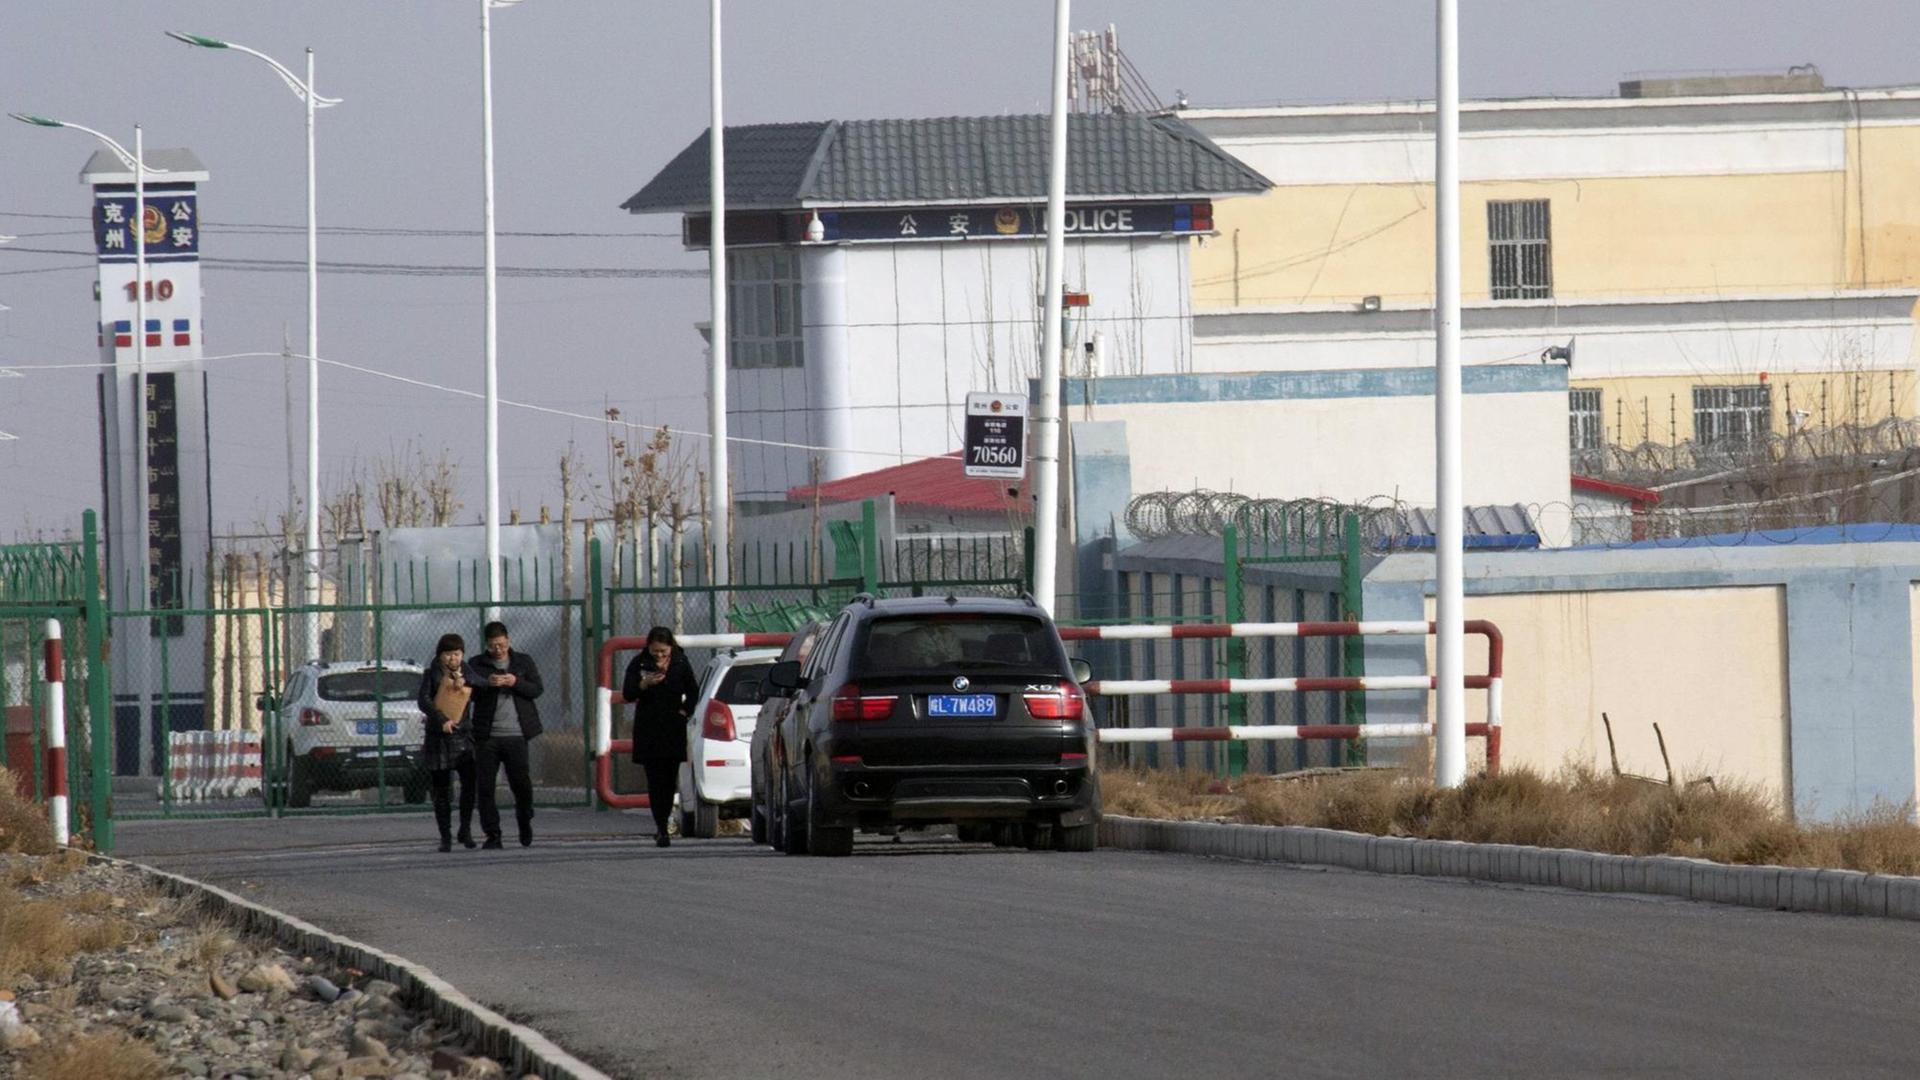  Das Foto von Dezember 2018 zeigt eine Polizei-Station am Tor von einem Lager für Uiguren.